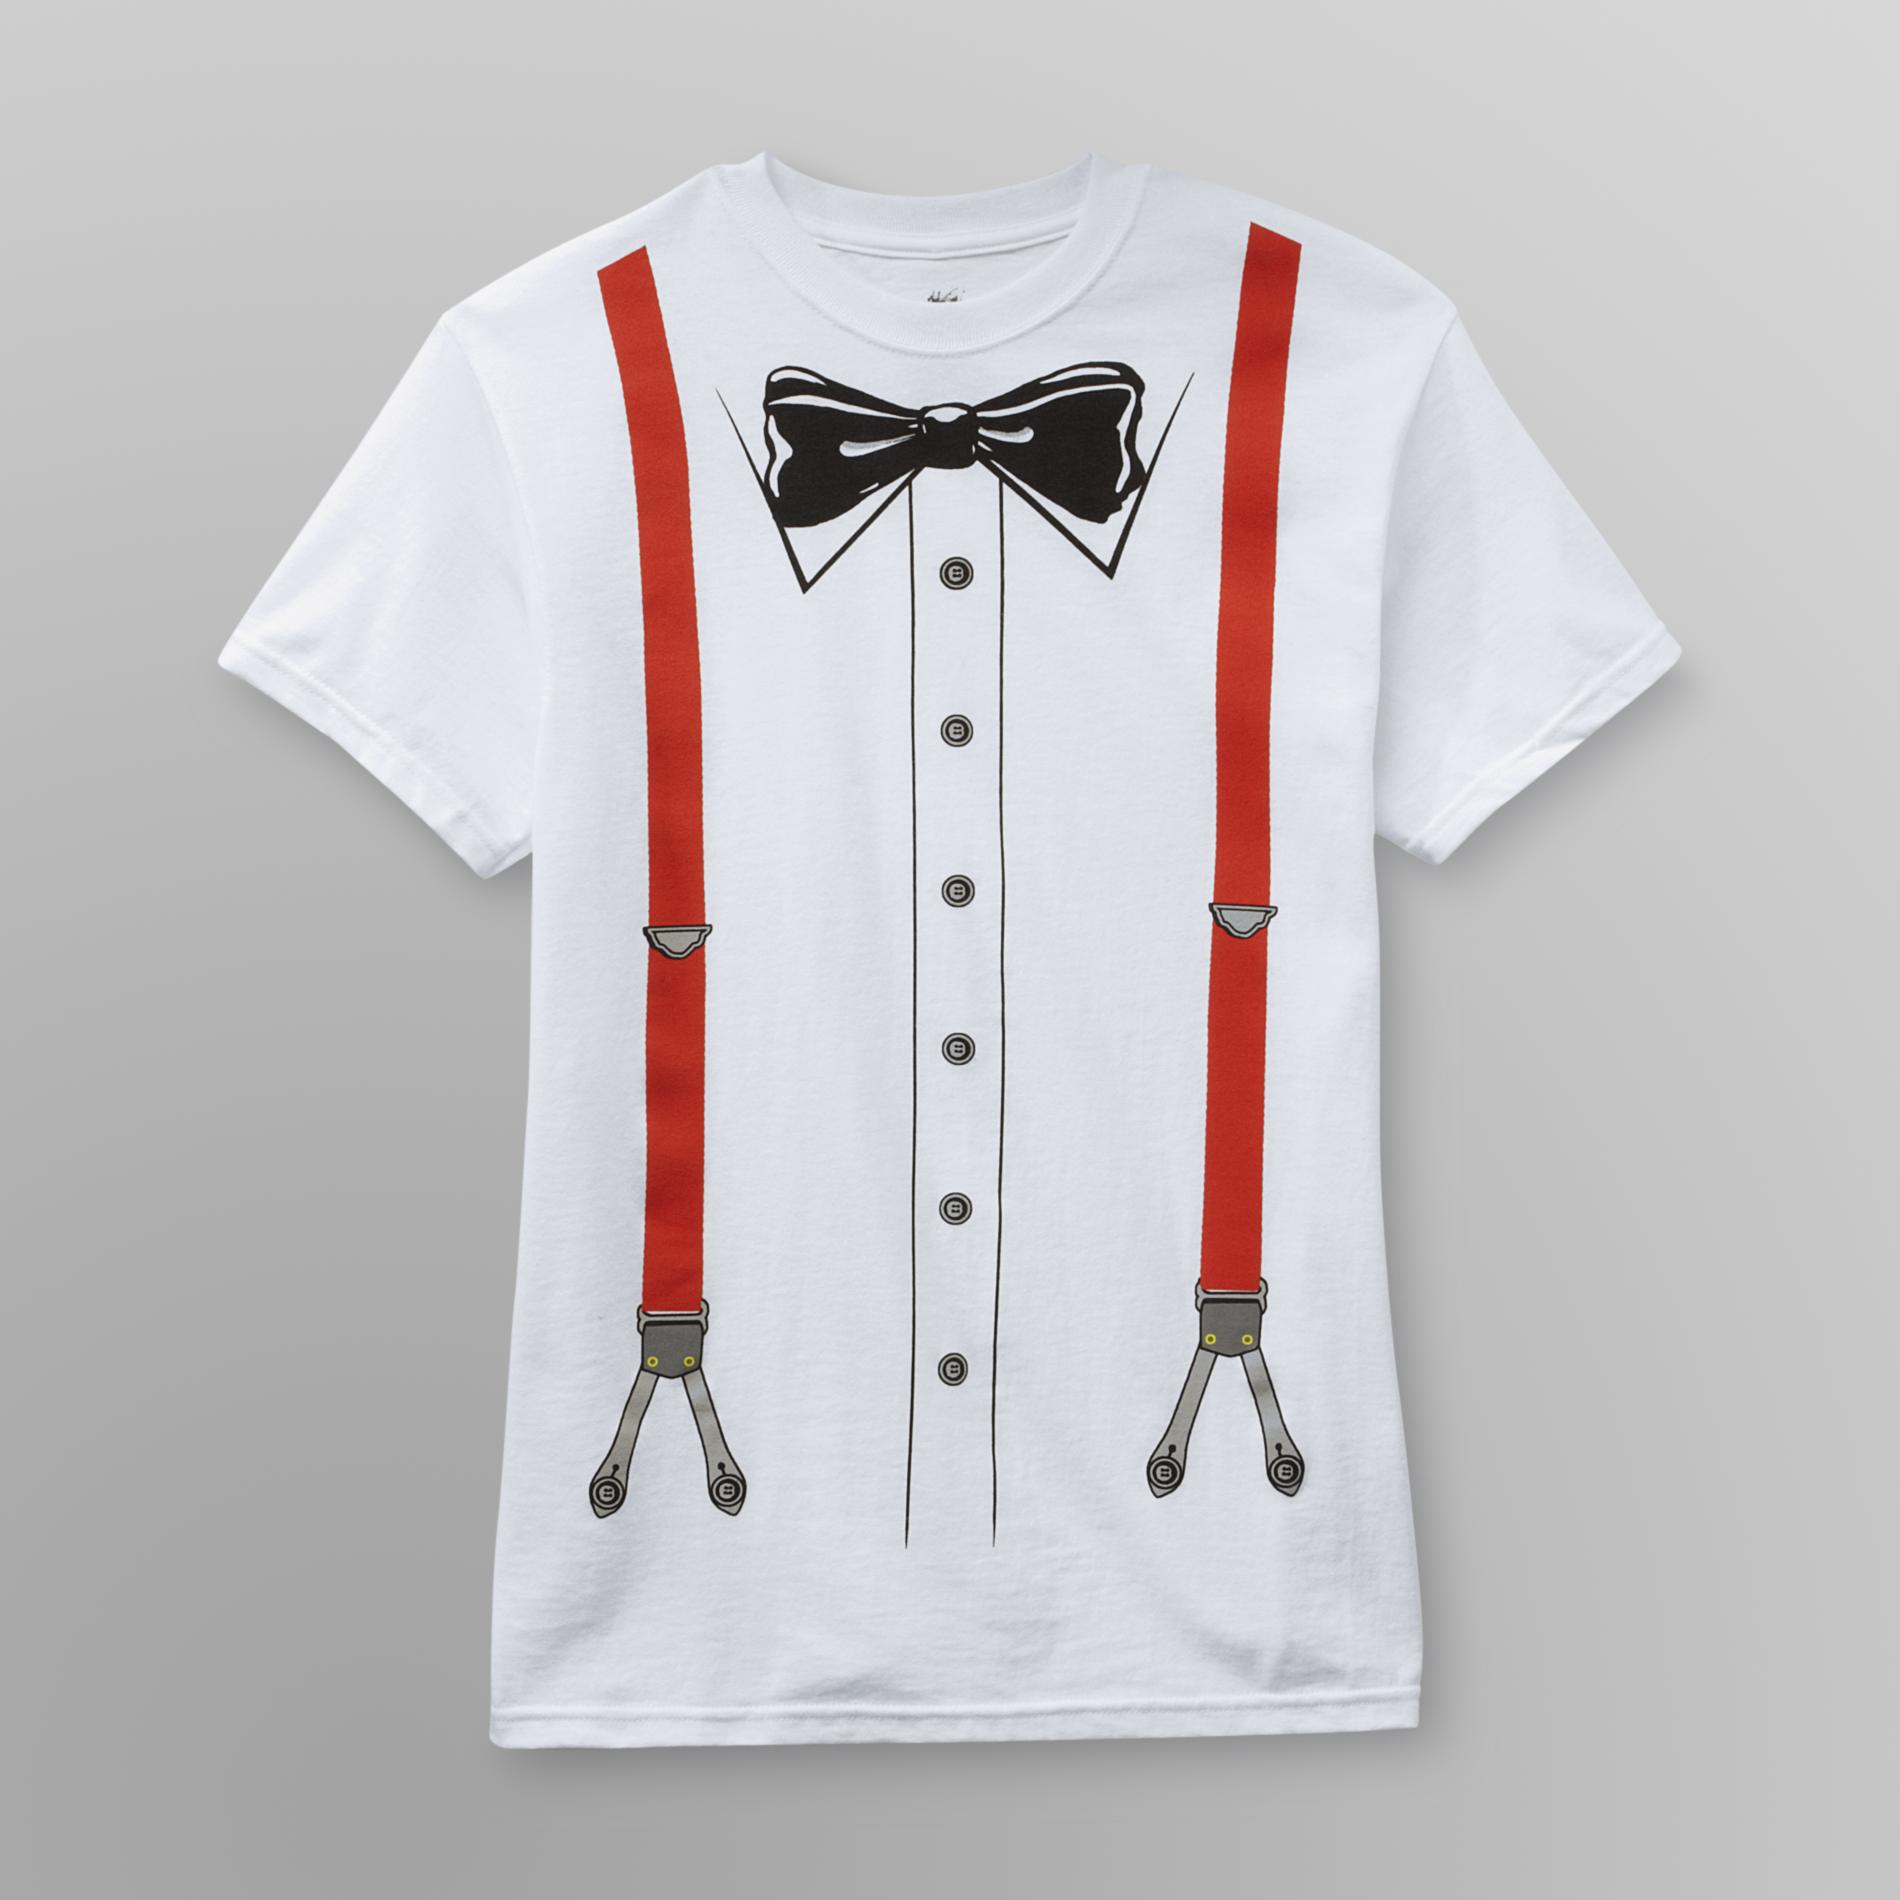 Young Men's T-Shirt - Bow Tie/Suspenders